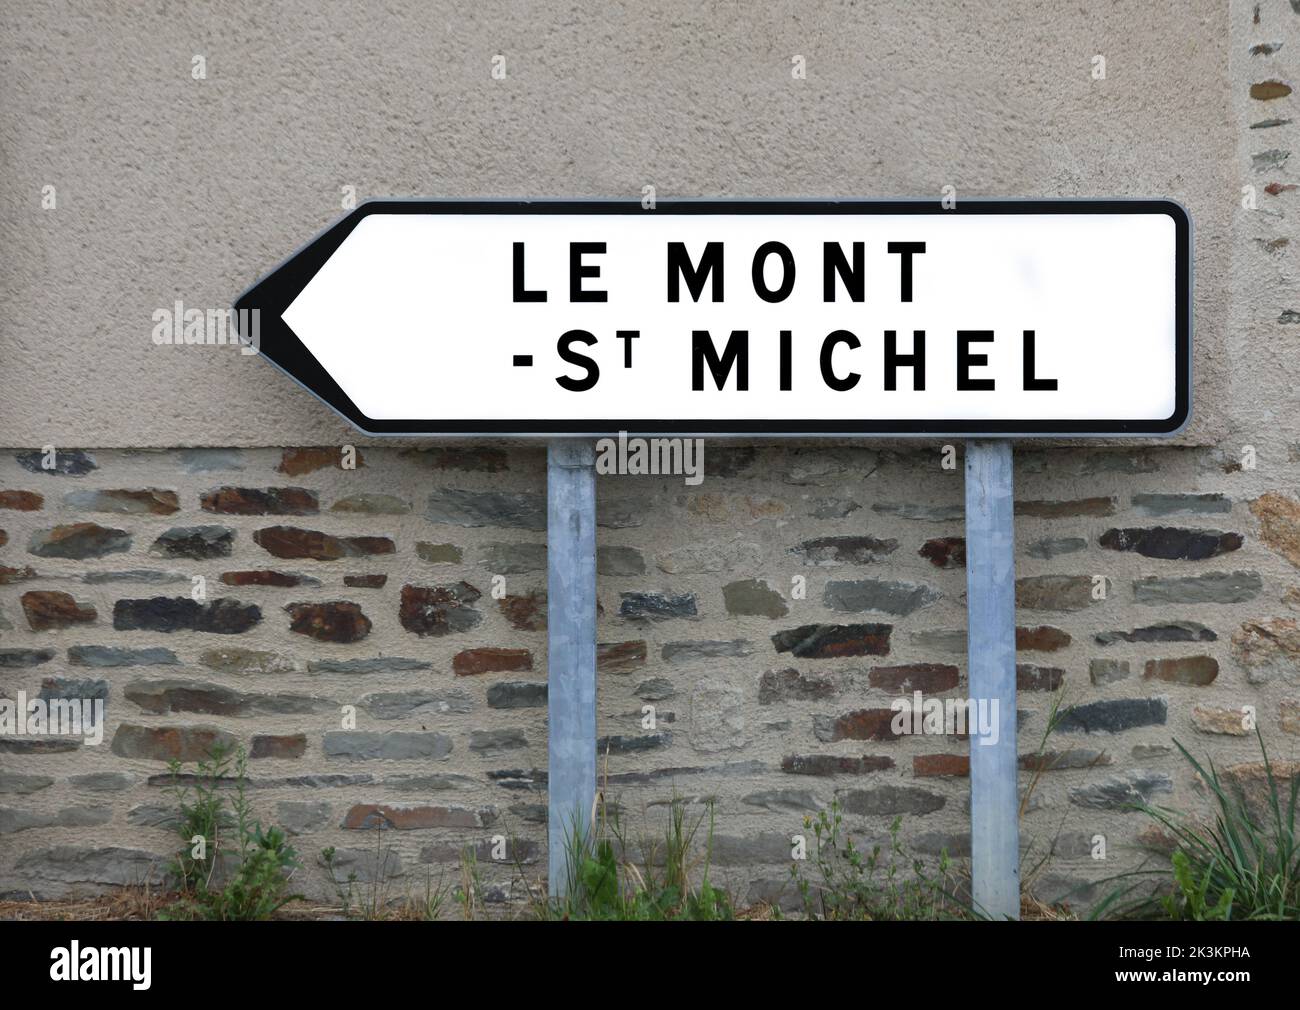 Señal de carretera con el texto Le Mont ST MICHEL y la flecha para llegar a la abadía normadiana en Francia Foto de stock